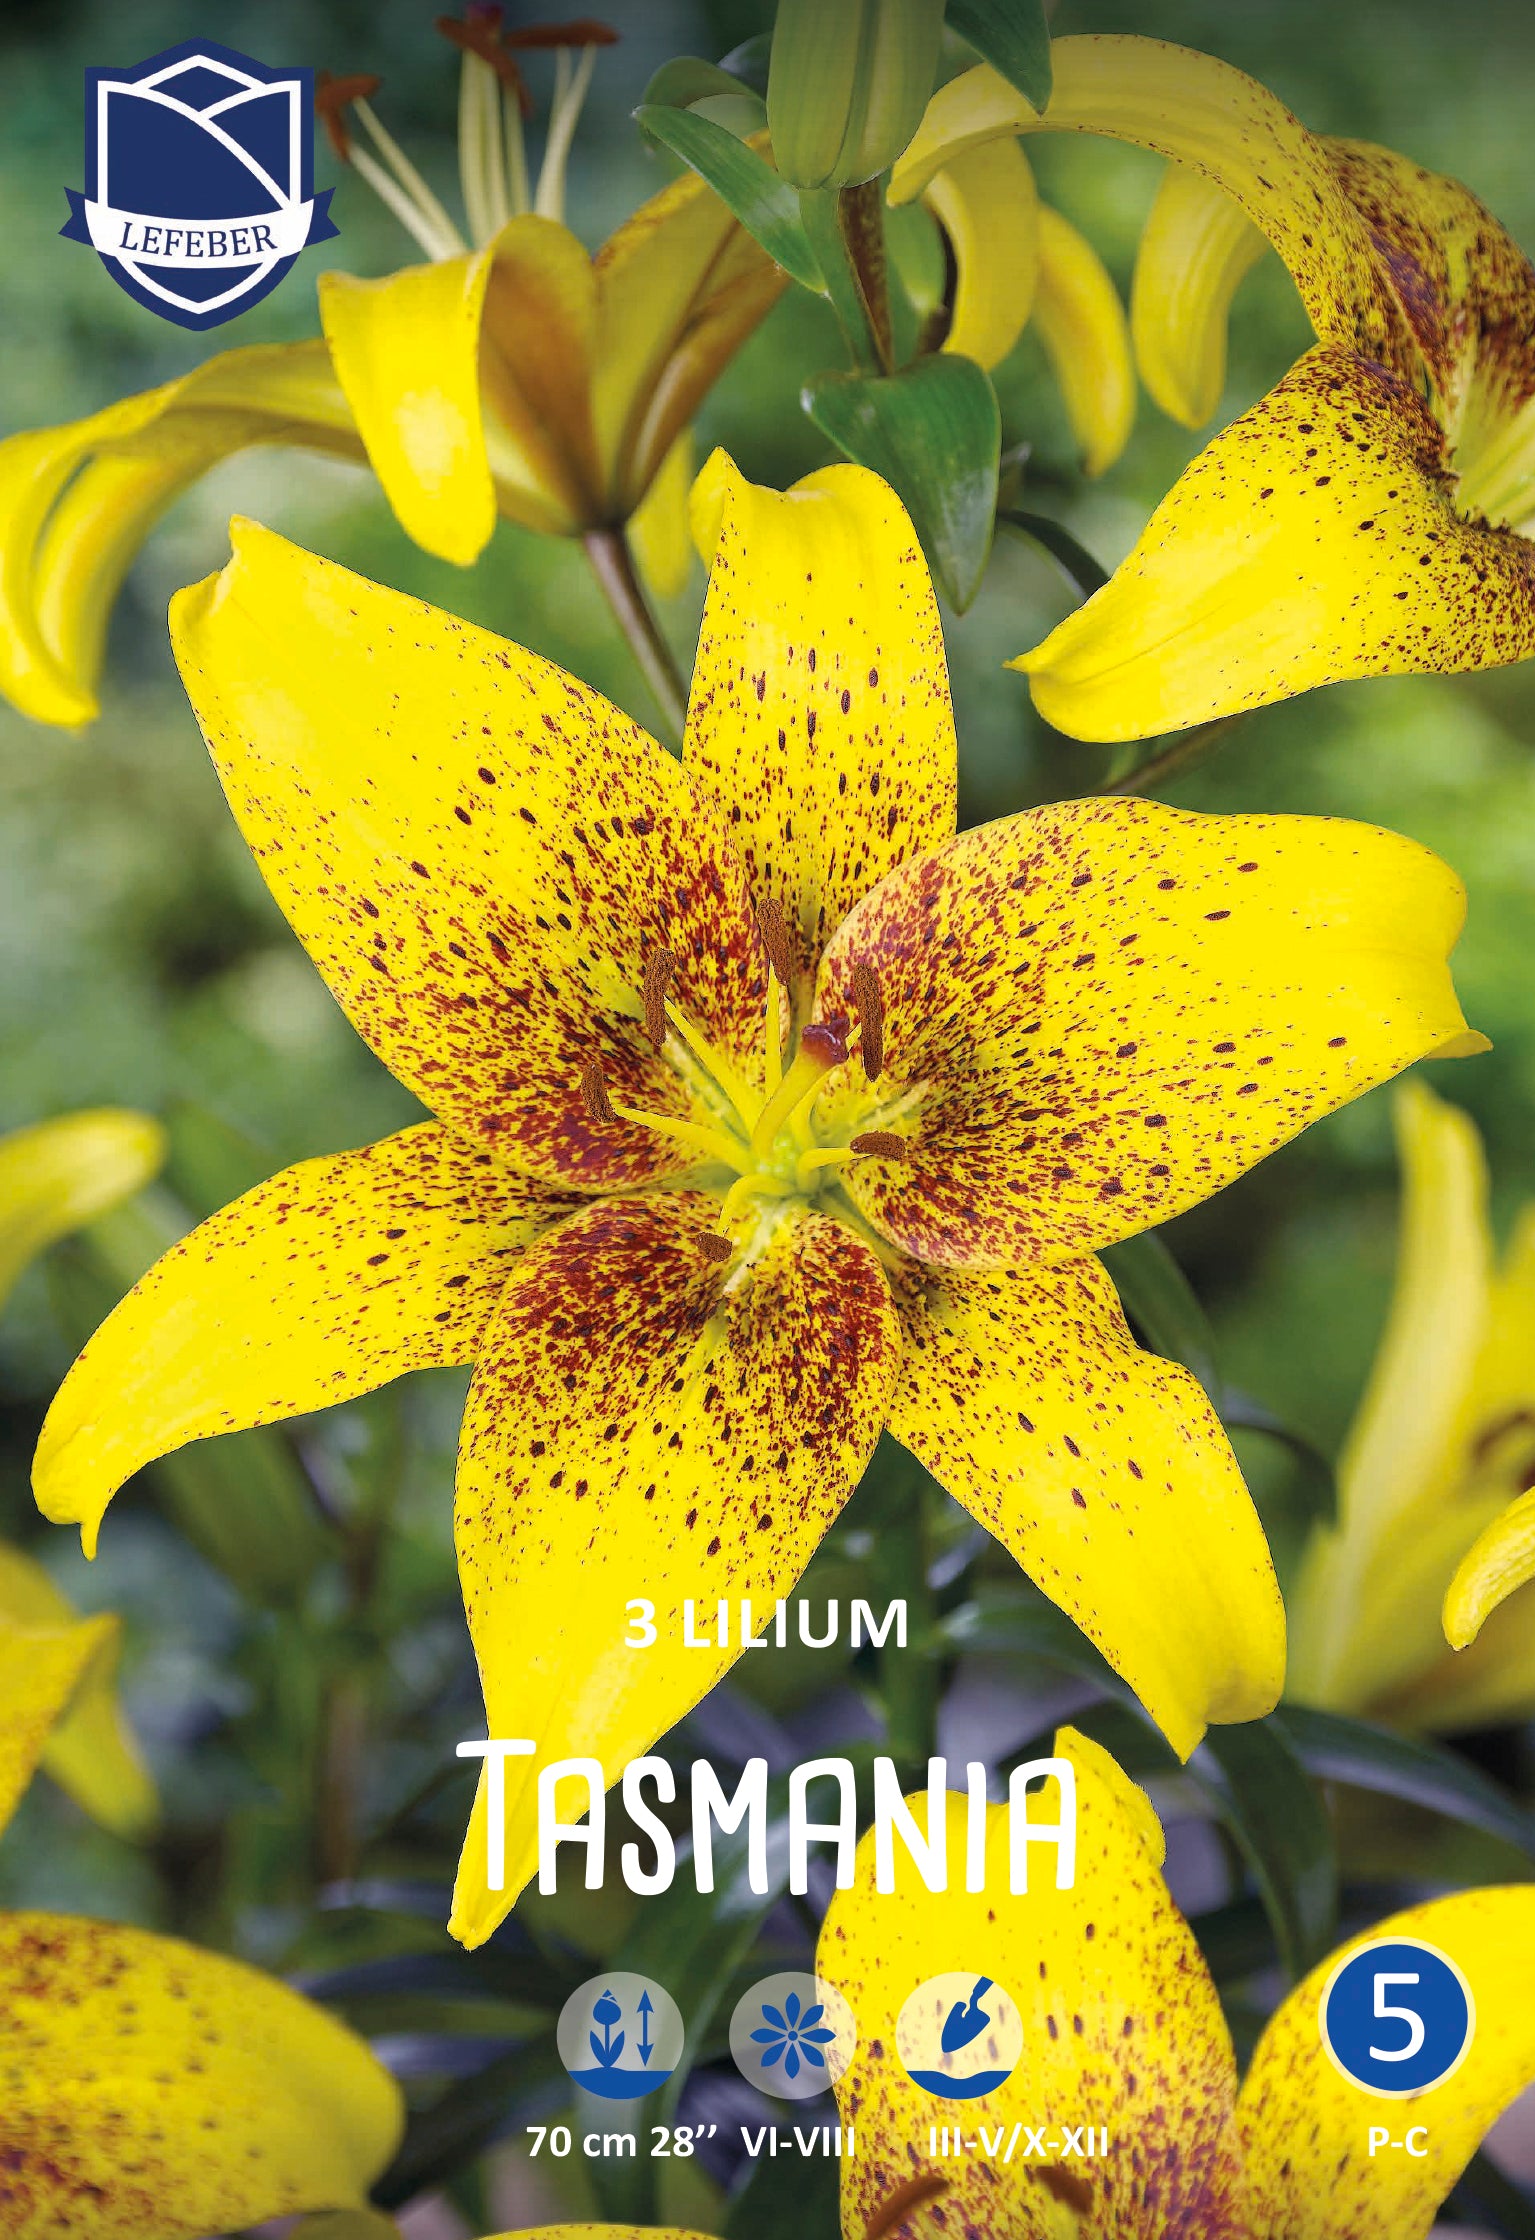 Lilium Tasmania